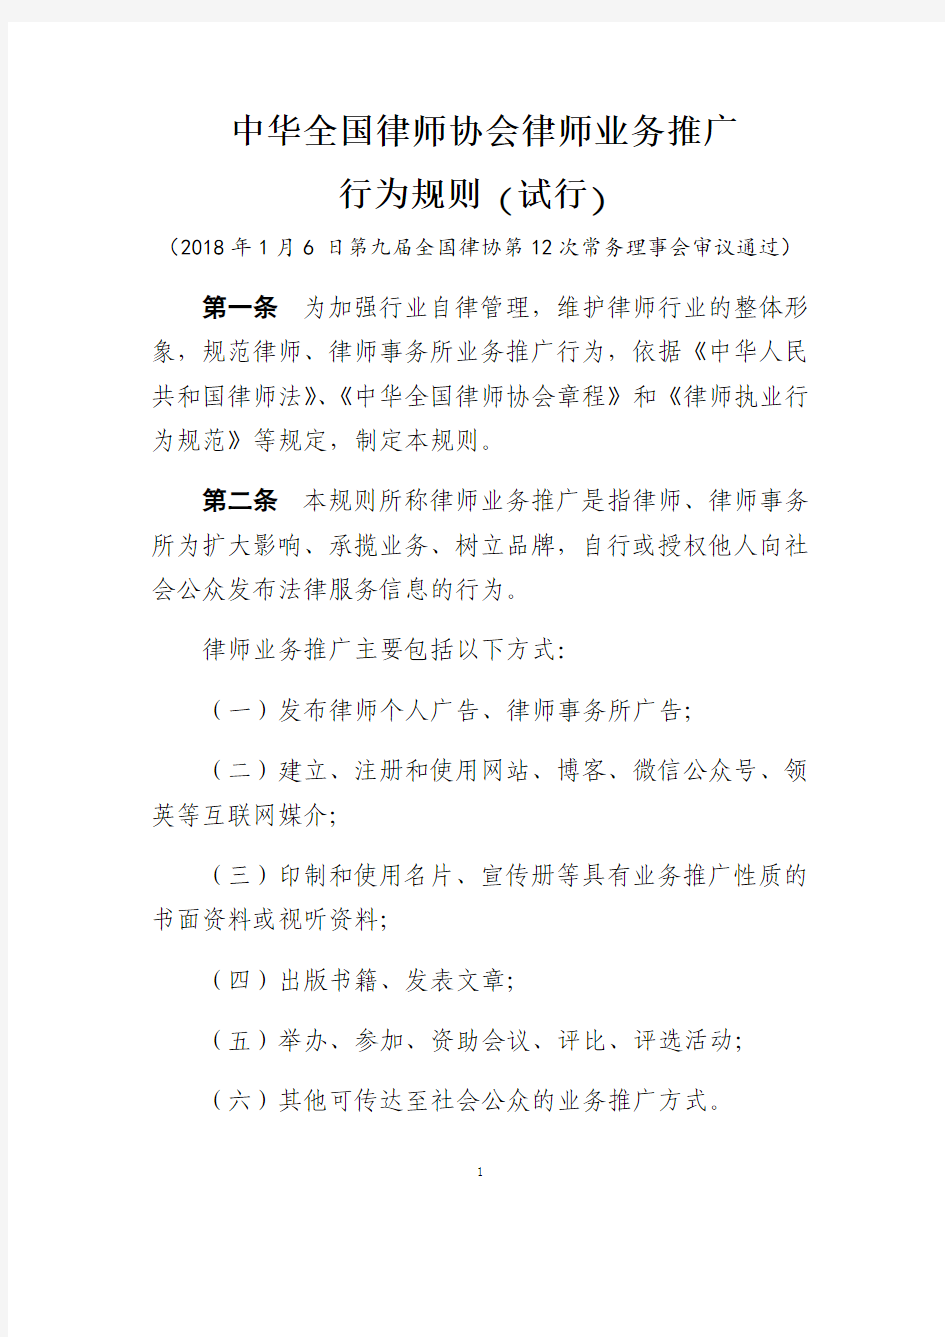 中华全国律师协会律师业务推广行为规则(试行)2018年